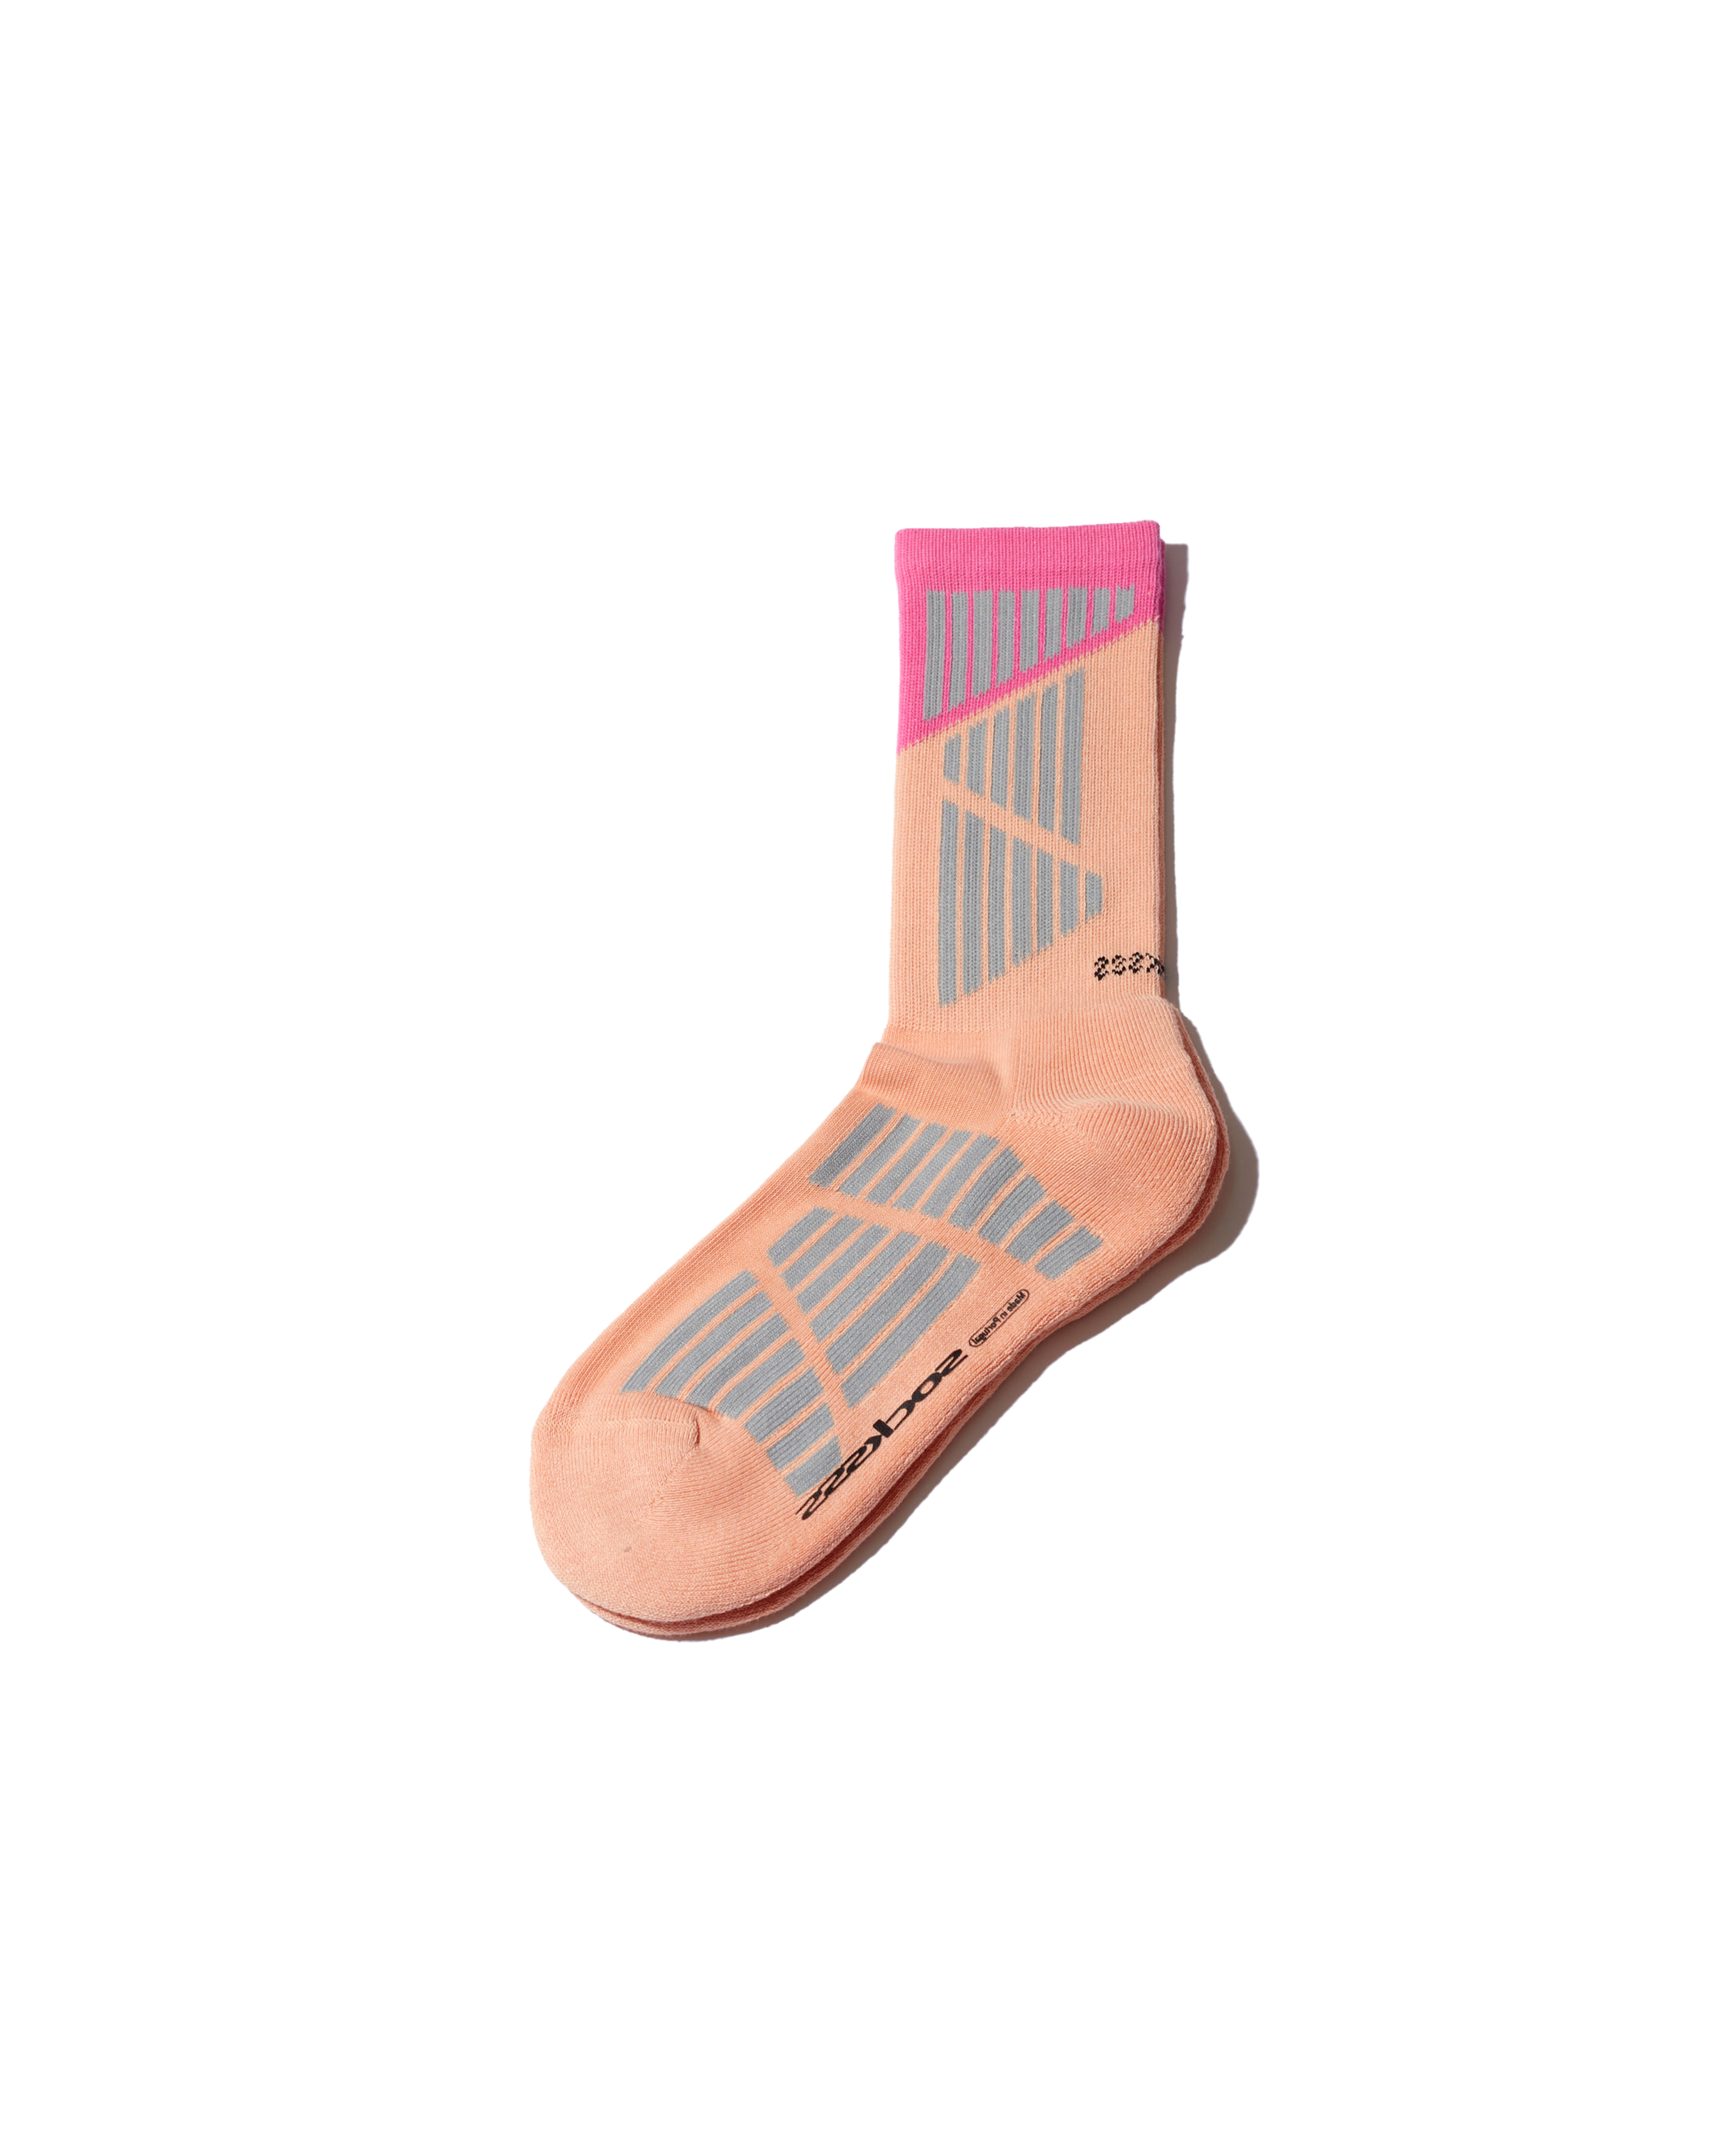 Galaxy Sports Sock - Peach / Pink